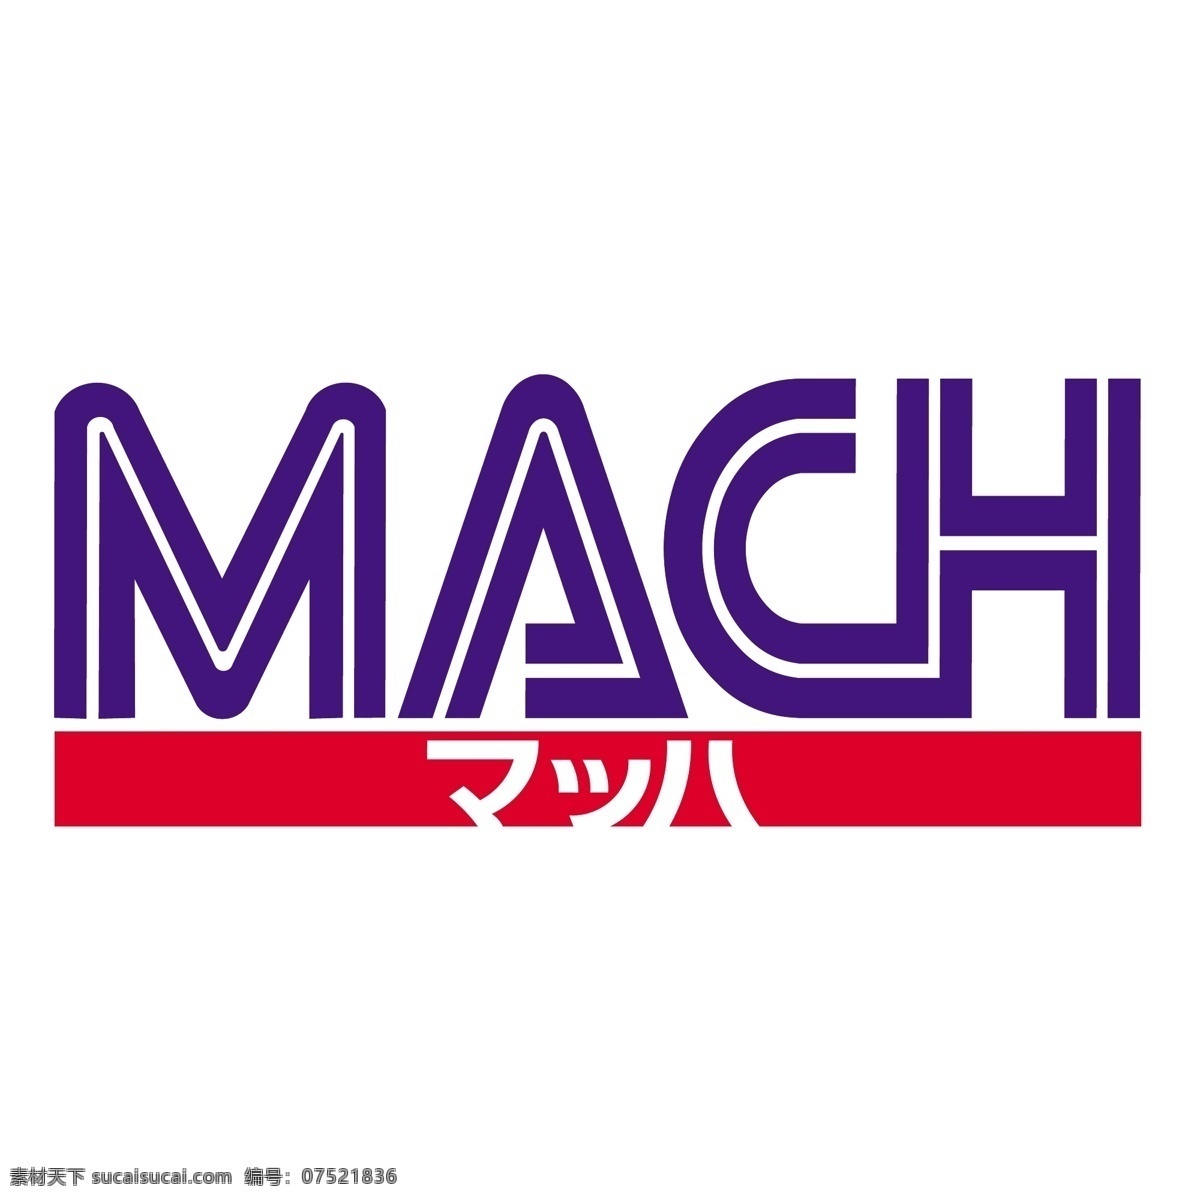 机器免费下载 标志 免费 马赫数 马赫 psd源文件 logo设计